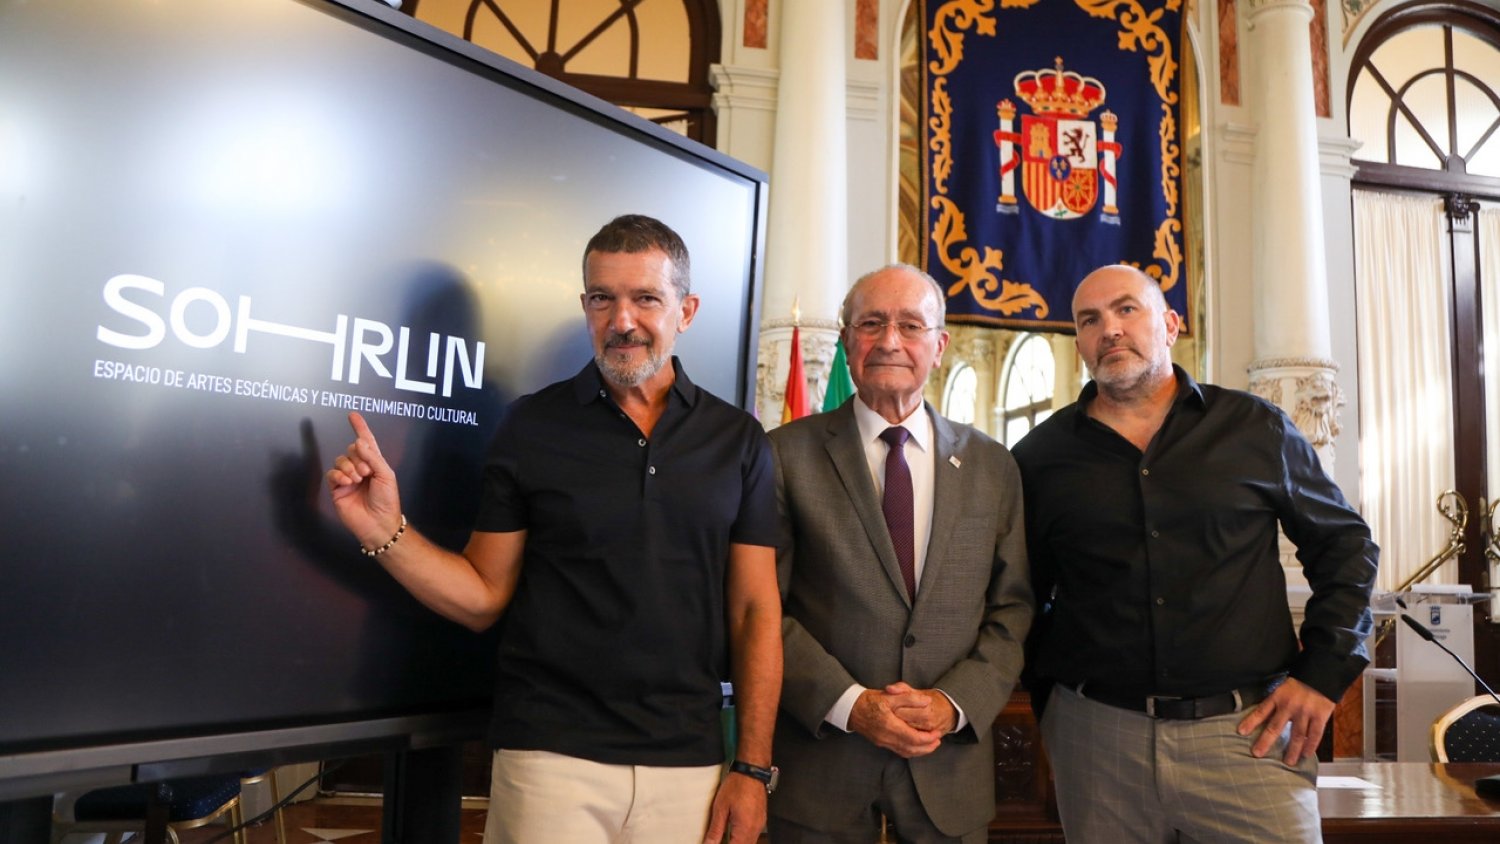 Málaga acoge Sohrlin, el nuevo espacio de formación en las artes escénicas y audiovisuales